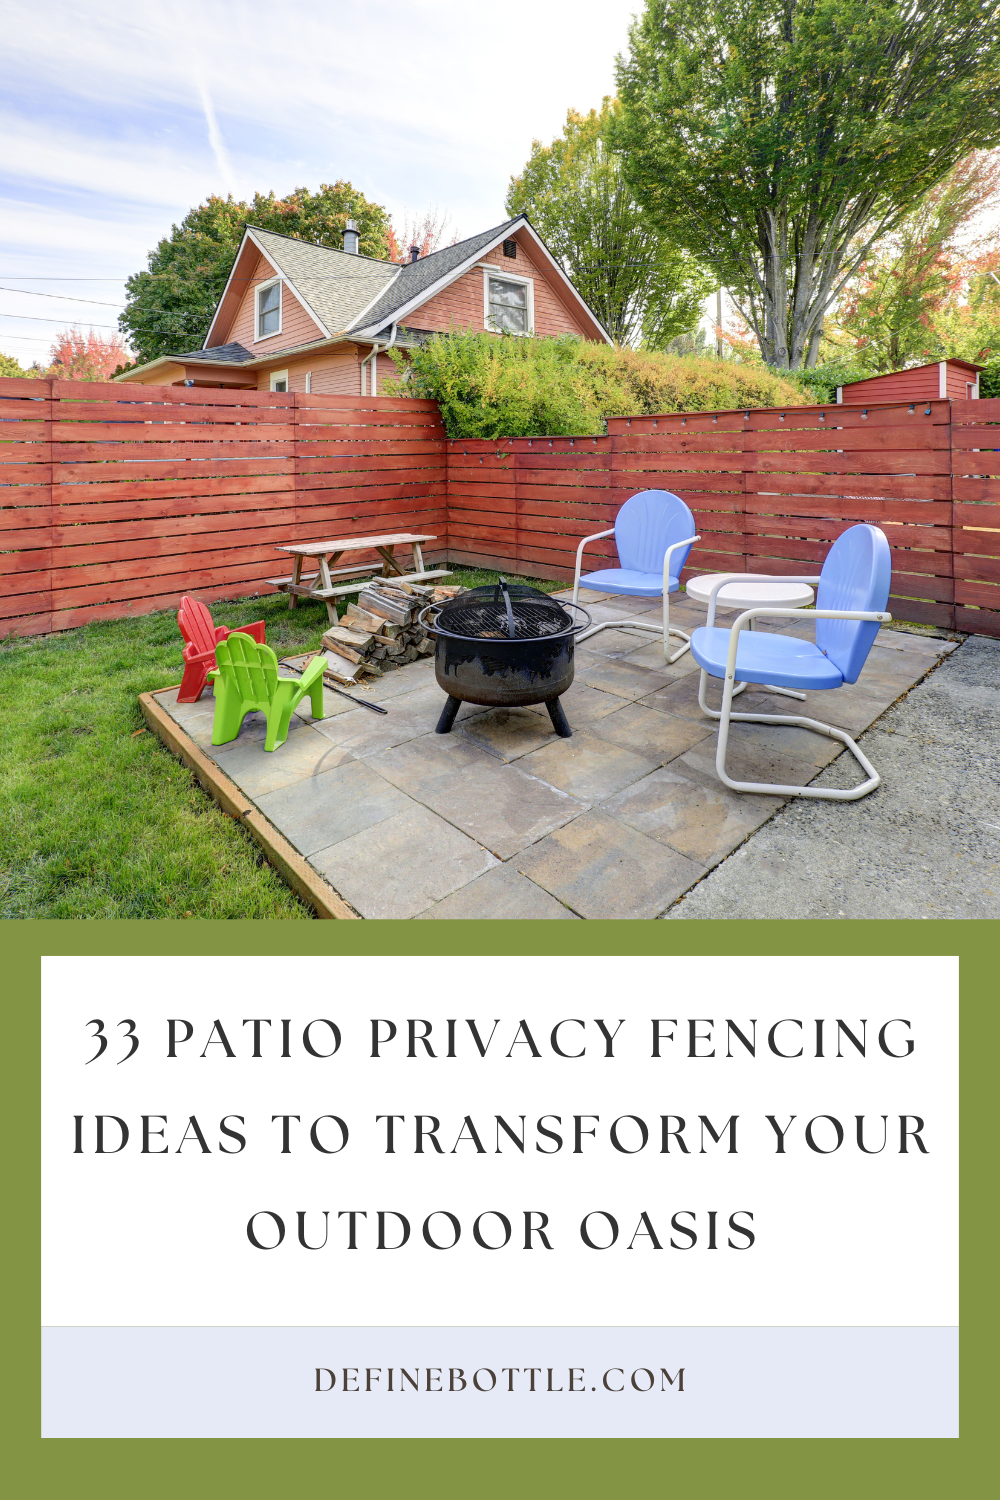 Patio Privacy Fencing Ideas